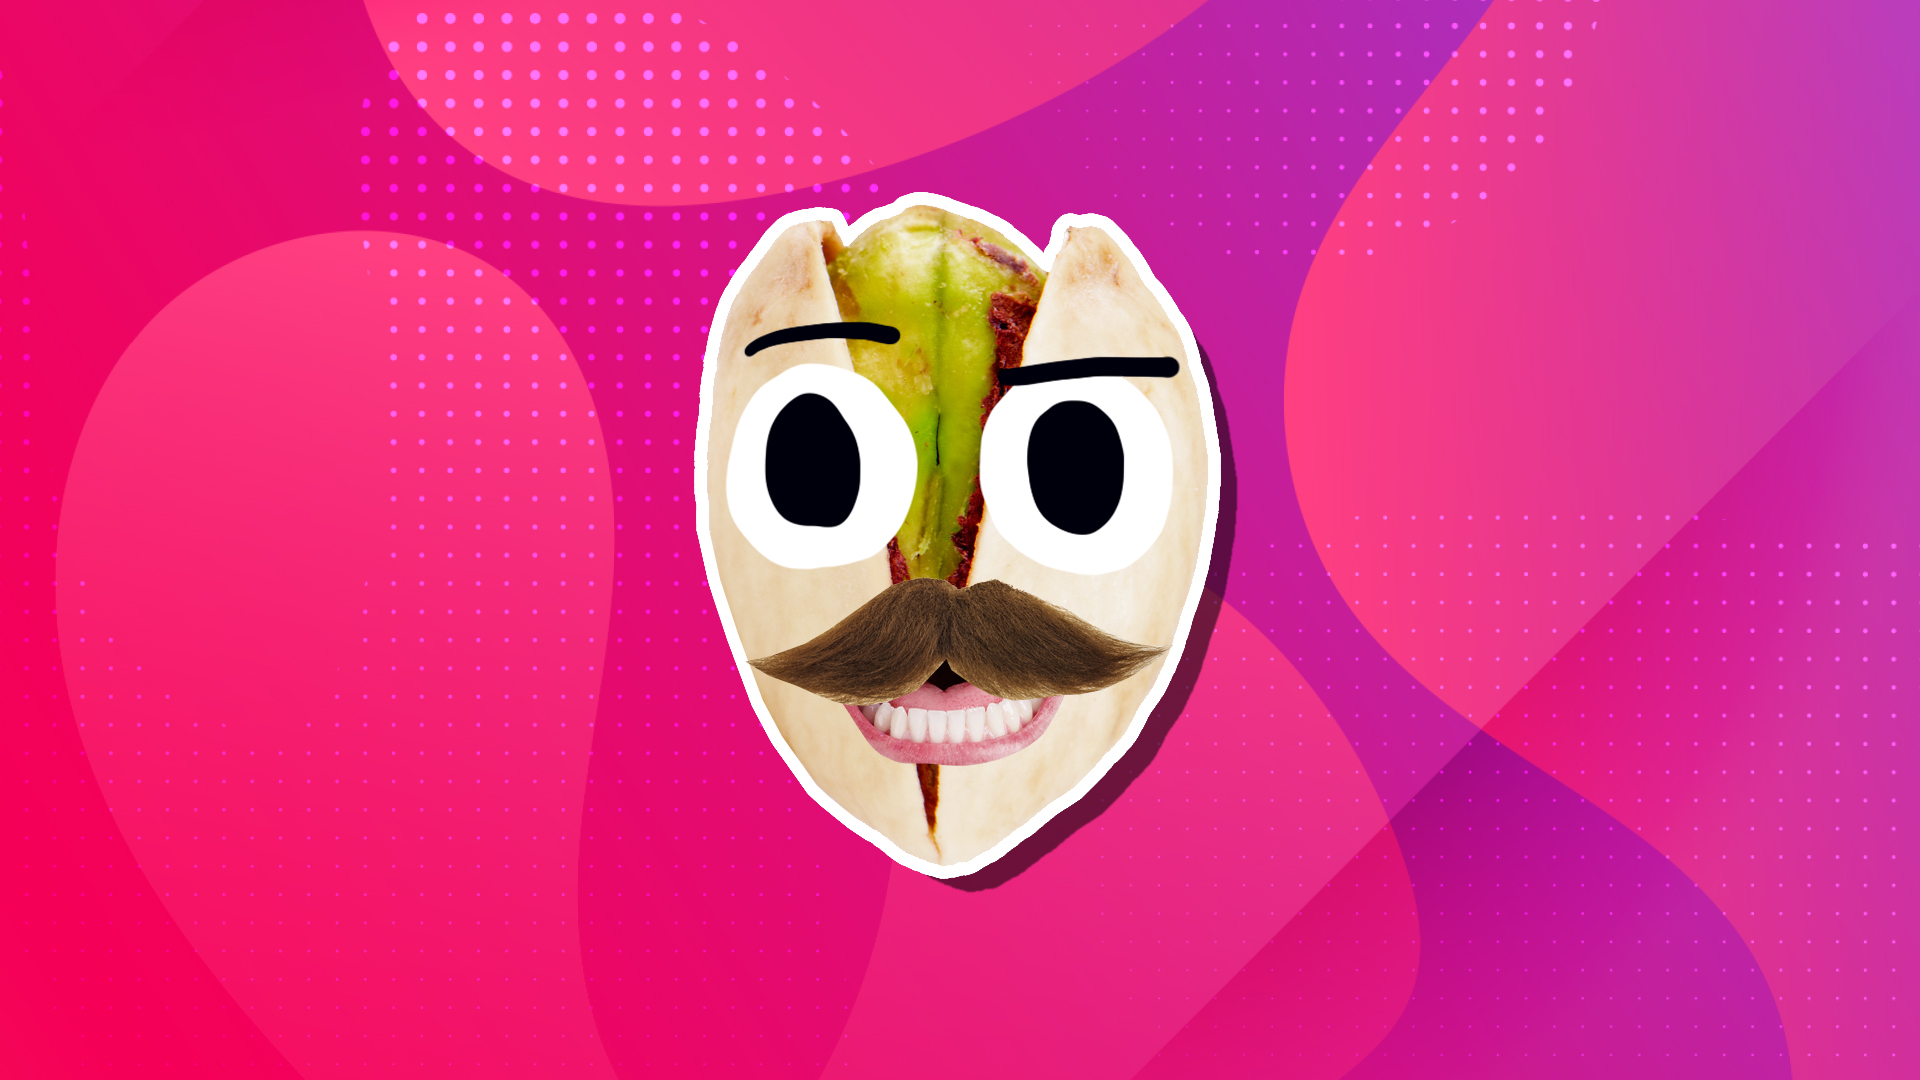 A pistachio with a moustache